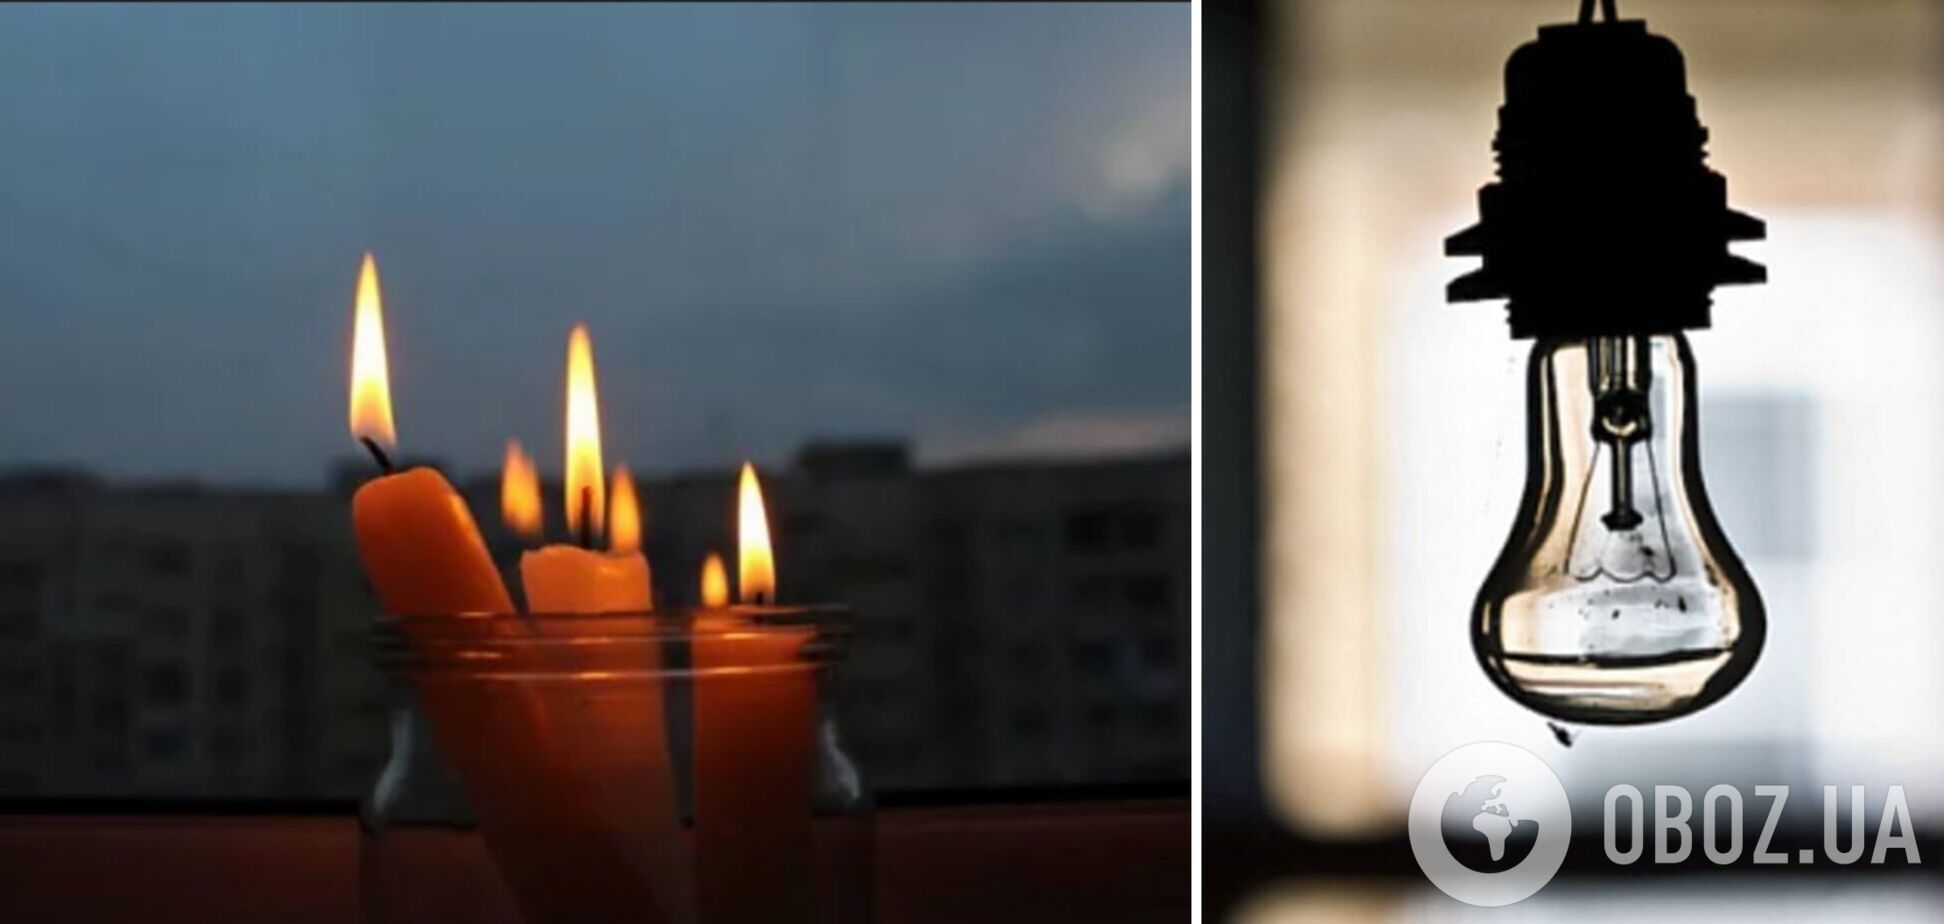 Інформацію про відключення світла в Україні оновлюватимуть кожні 30 хвилин